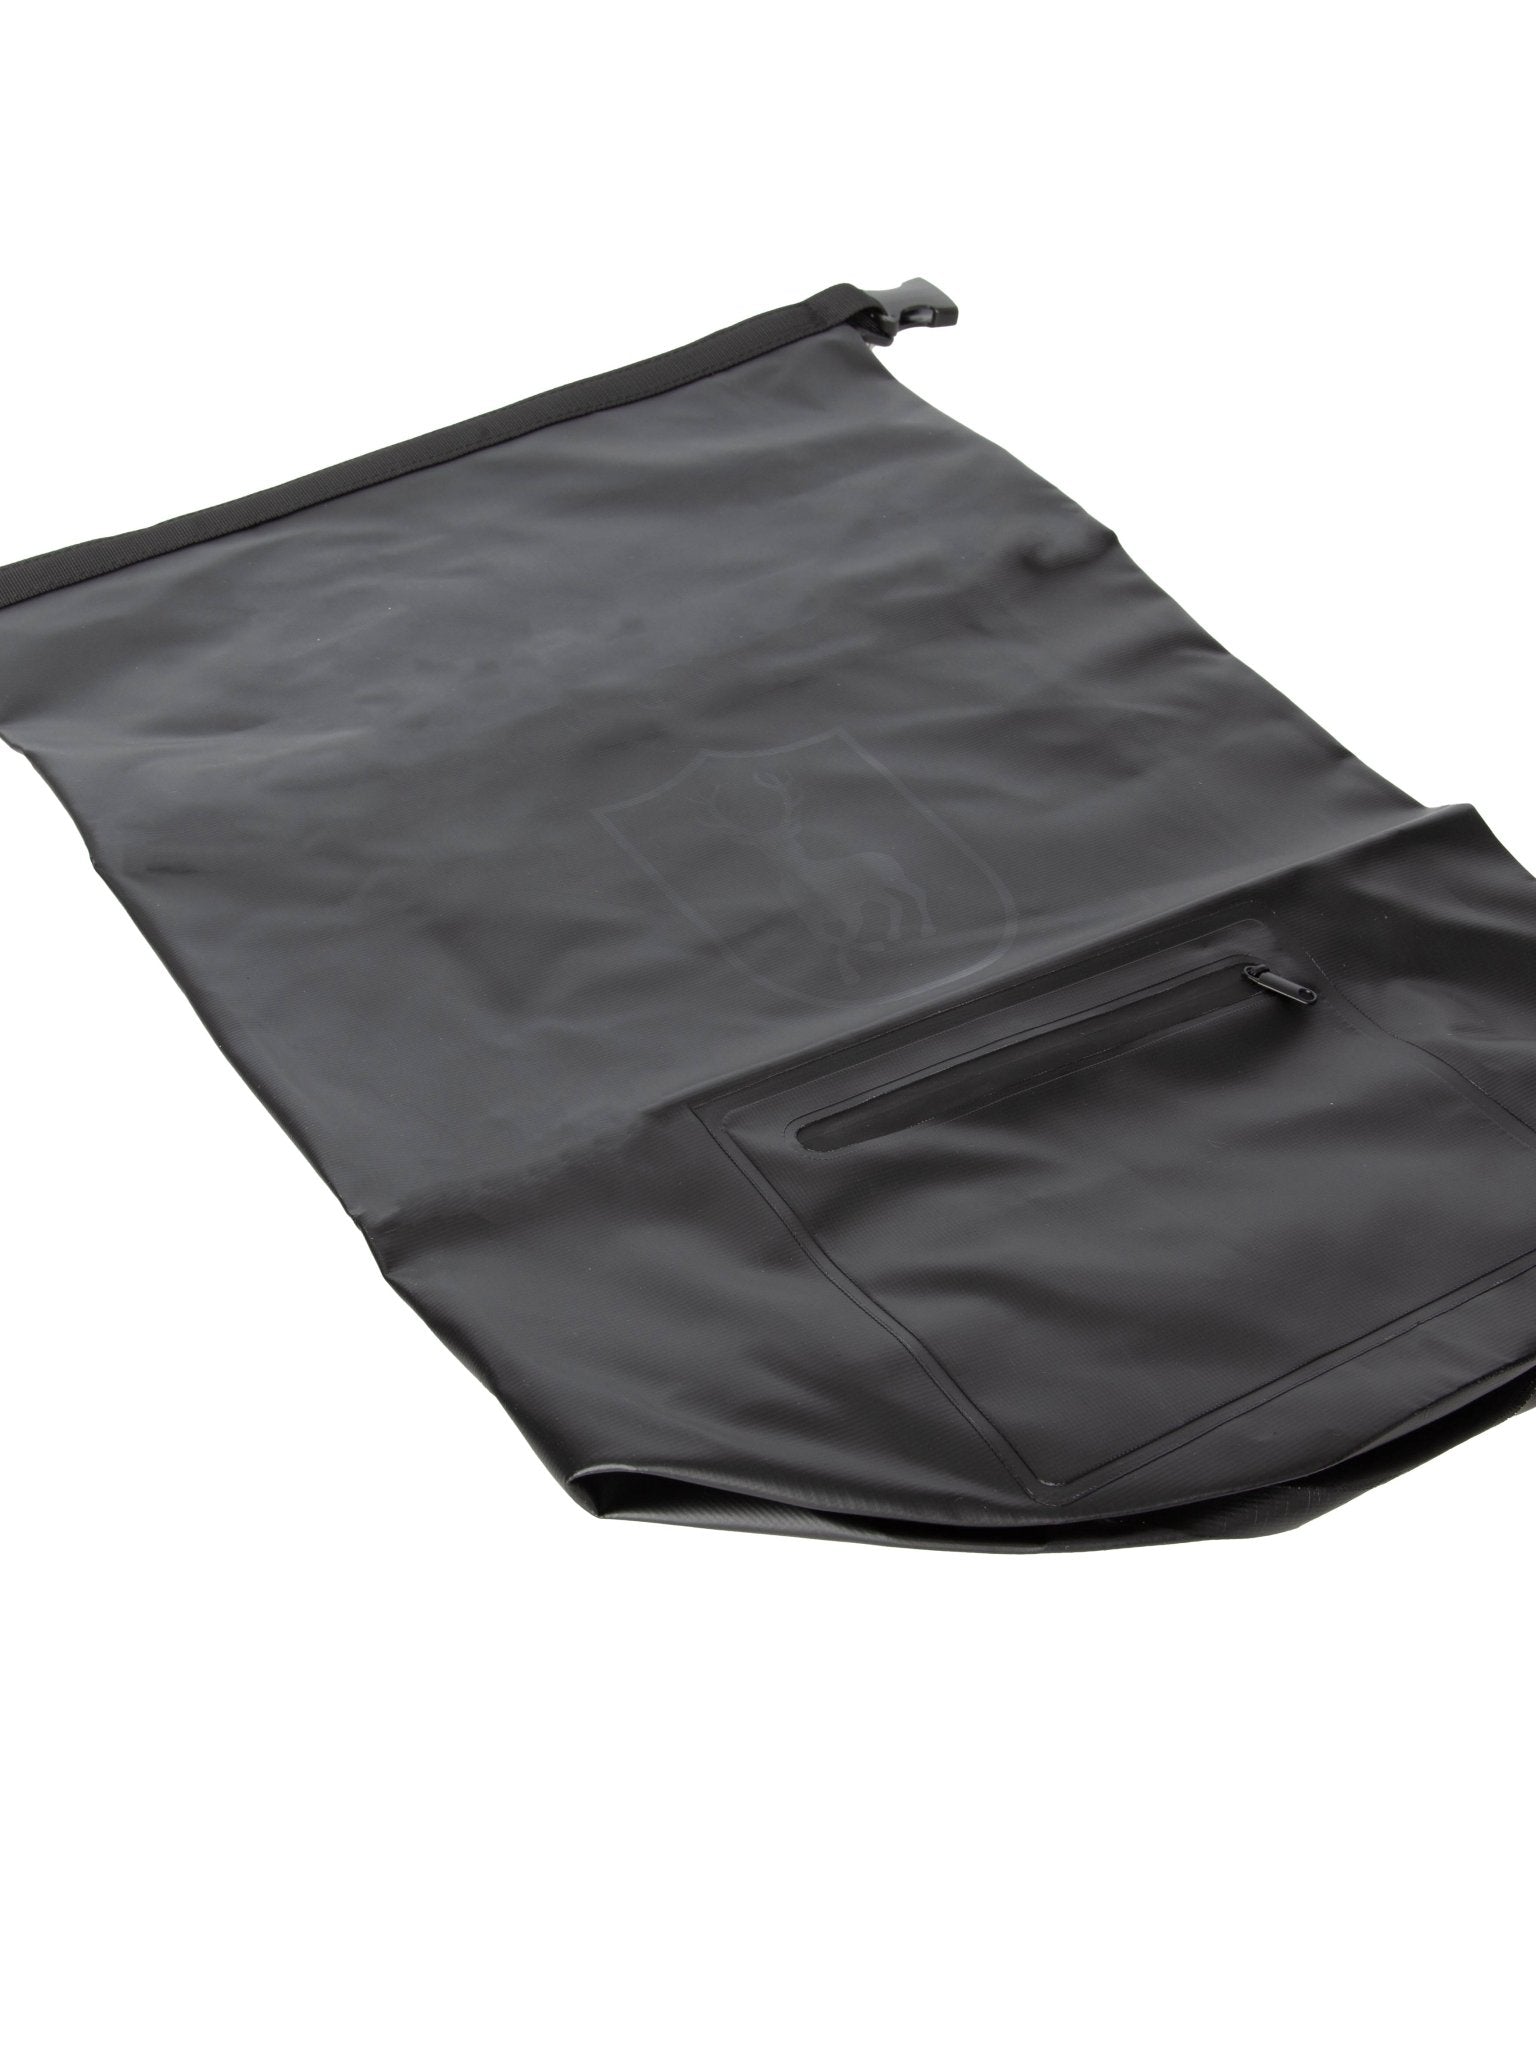 4elementsclothingDeerhunterDeerhunter - Waterproof Drybag / 20 litre Drysack / Backpack Dry bag - BlackBackpacksM341-999